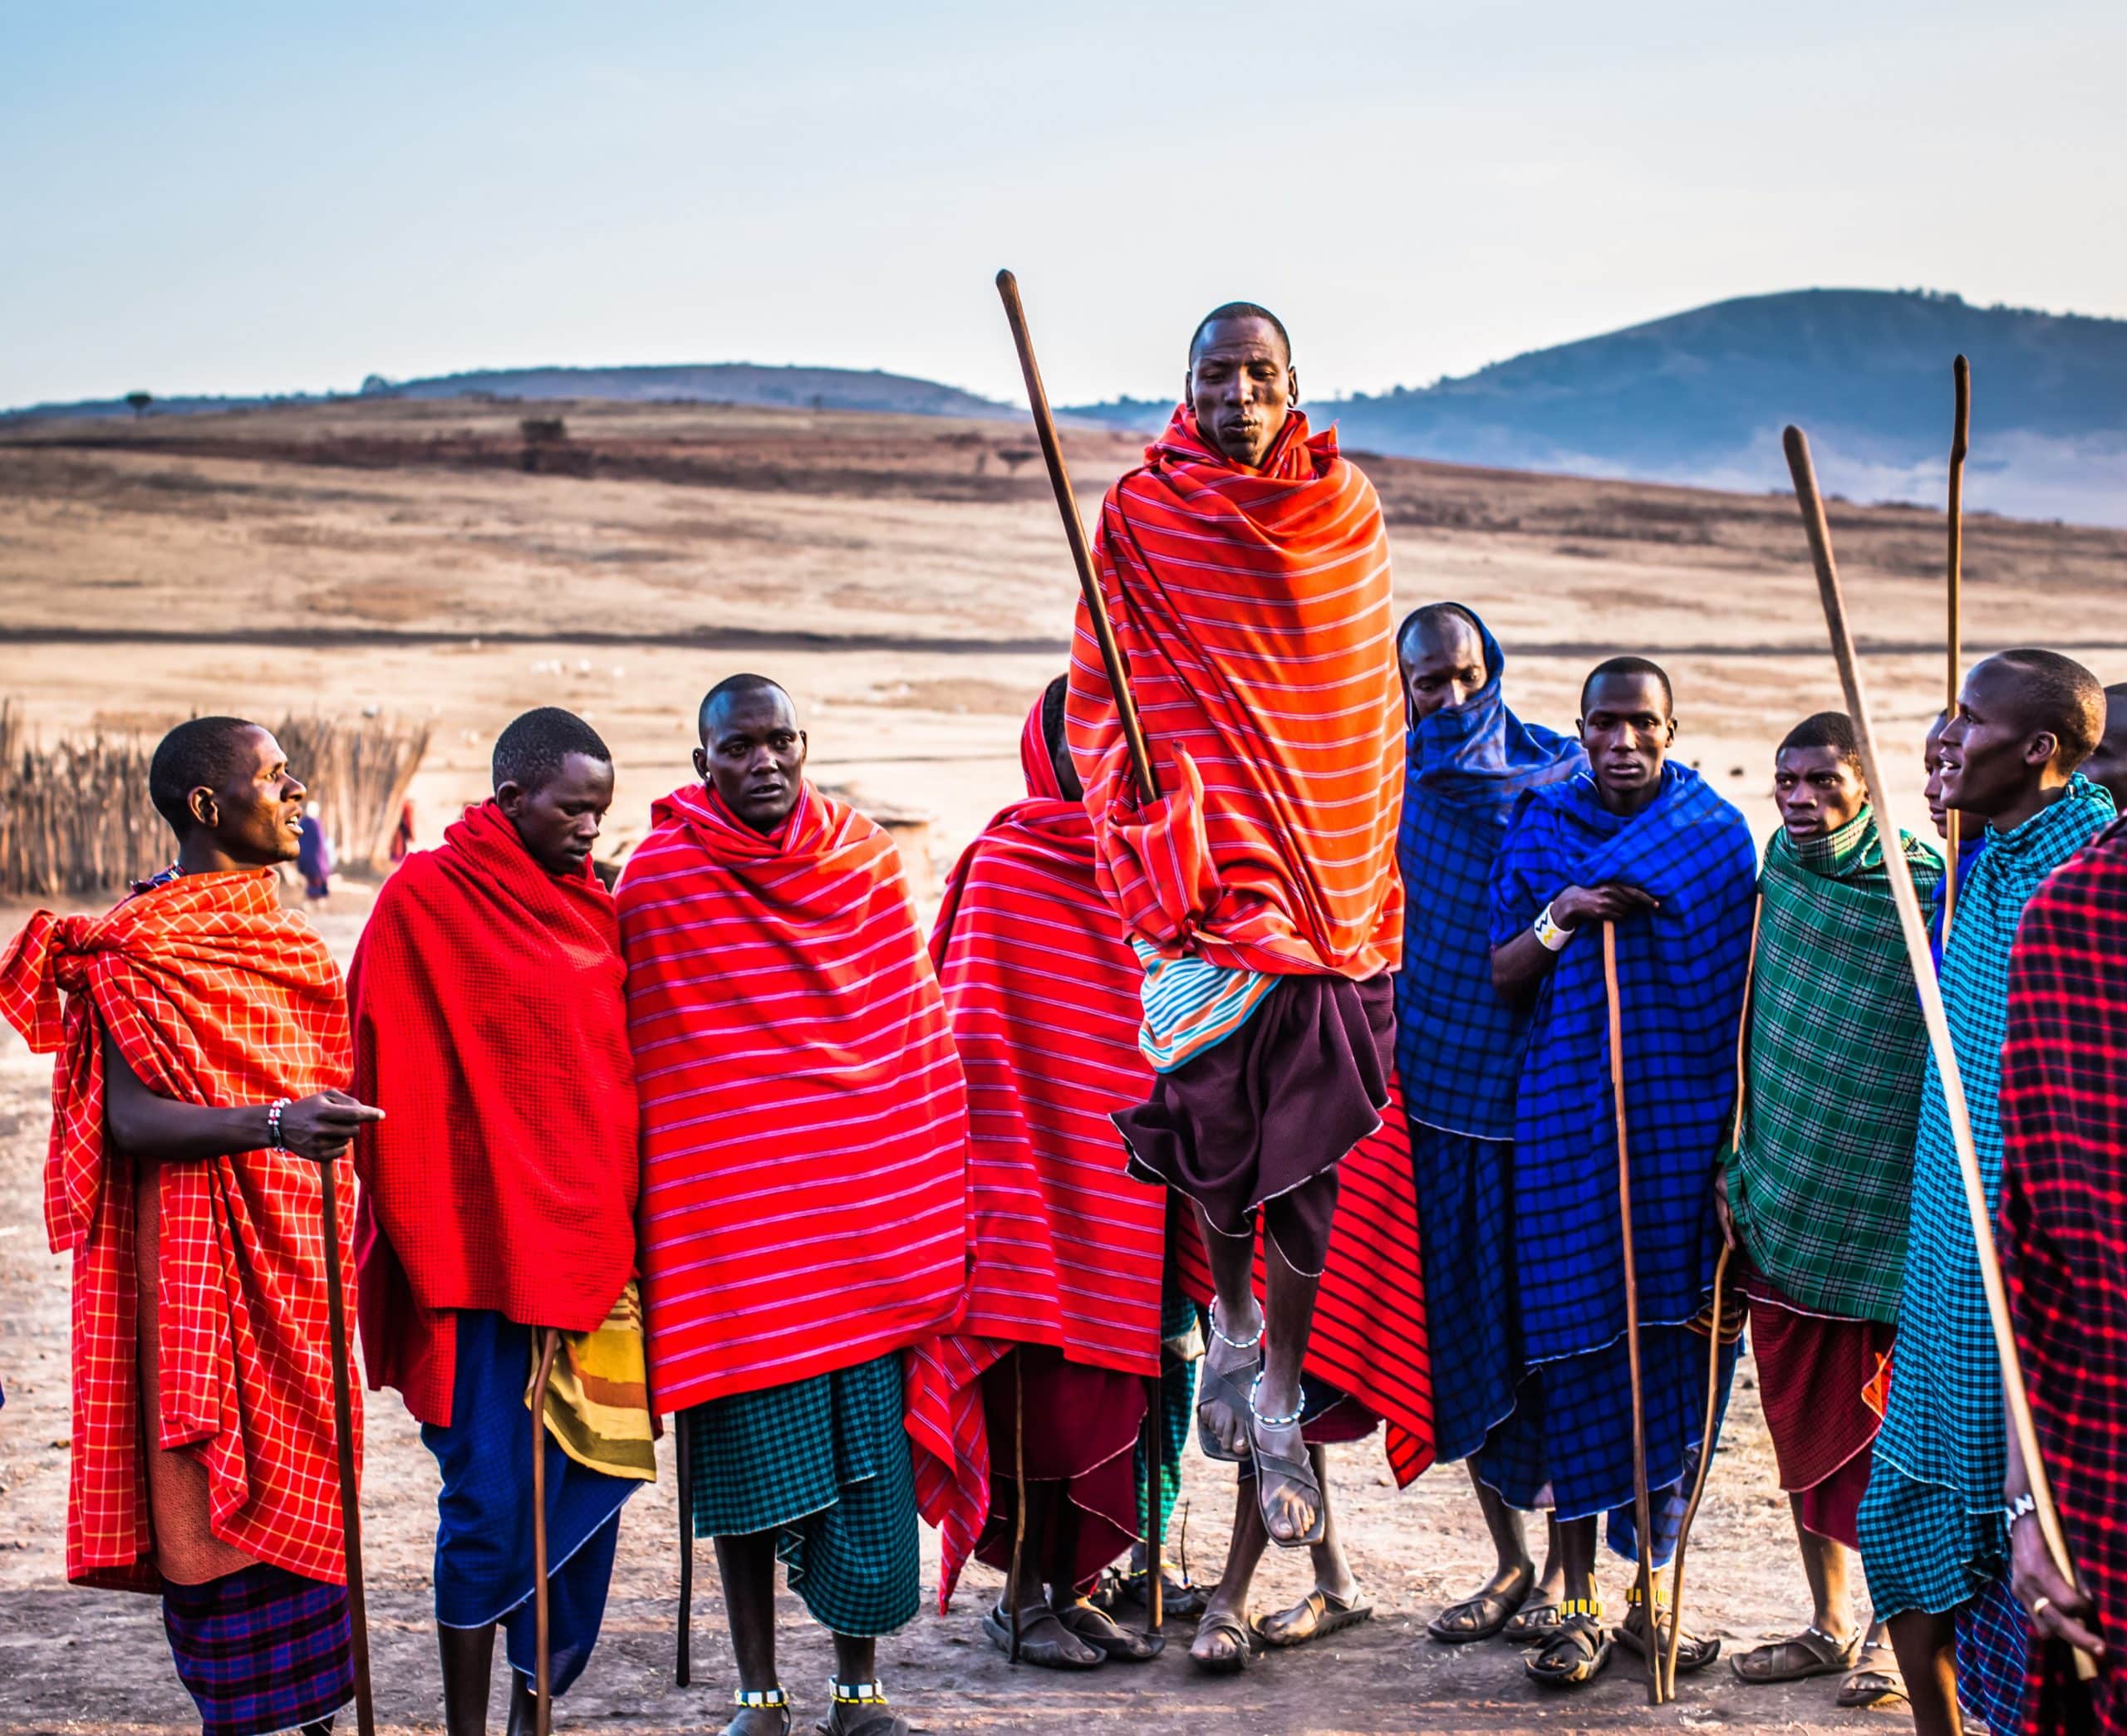 Volontariato internazionale in Kenya in un progetto di sviluppo della comunità Maasai